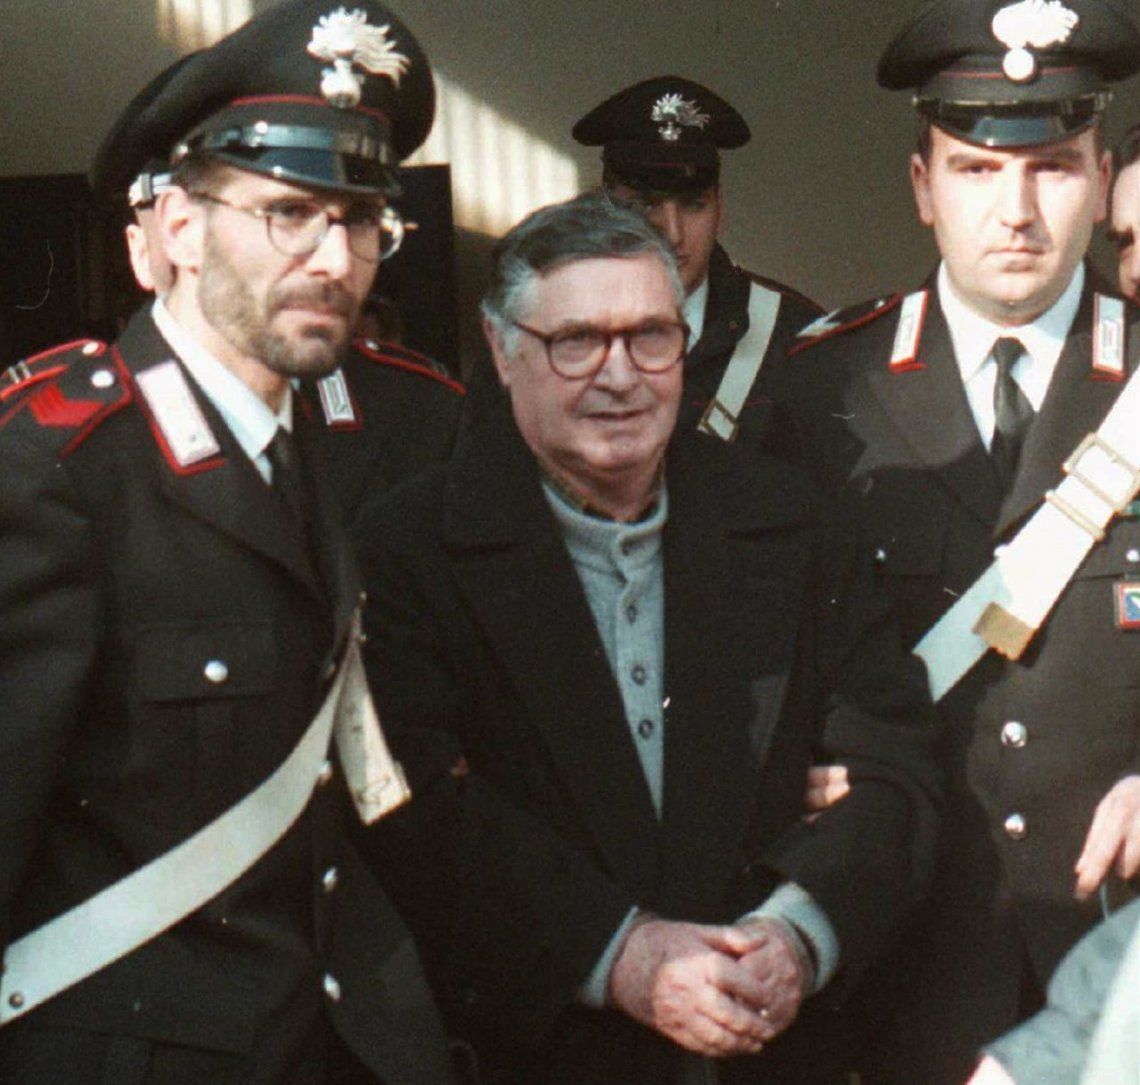 Murió Totó Riina, el jefe de la Cosa Nostra